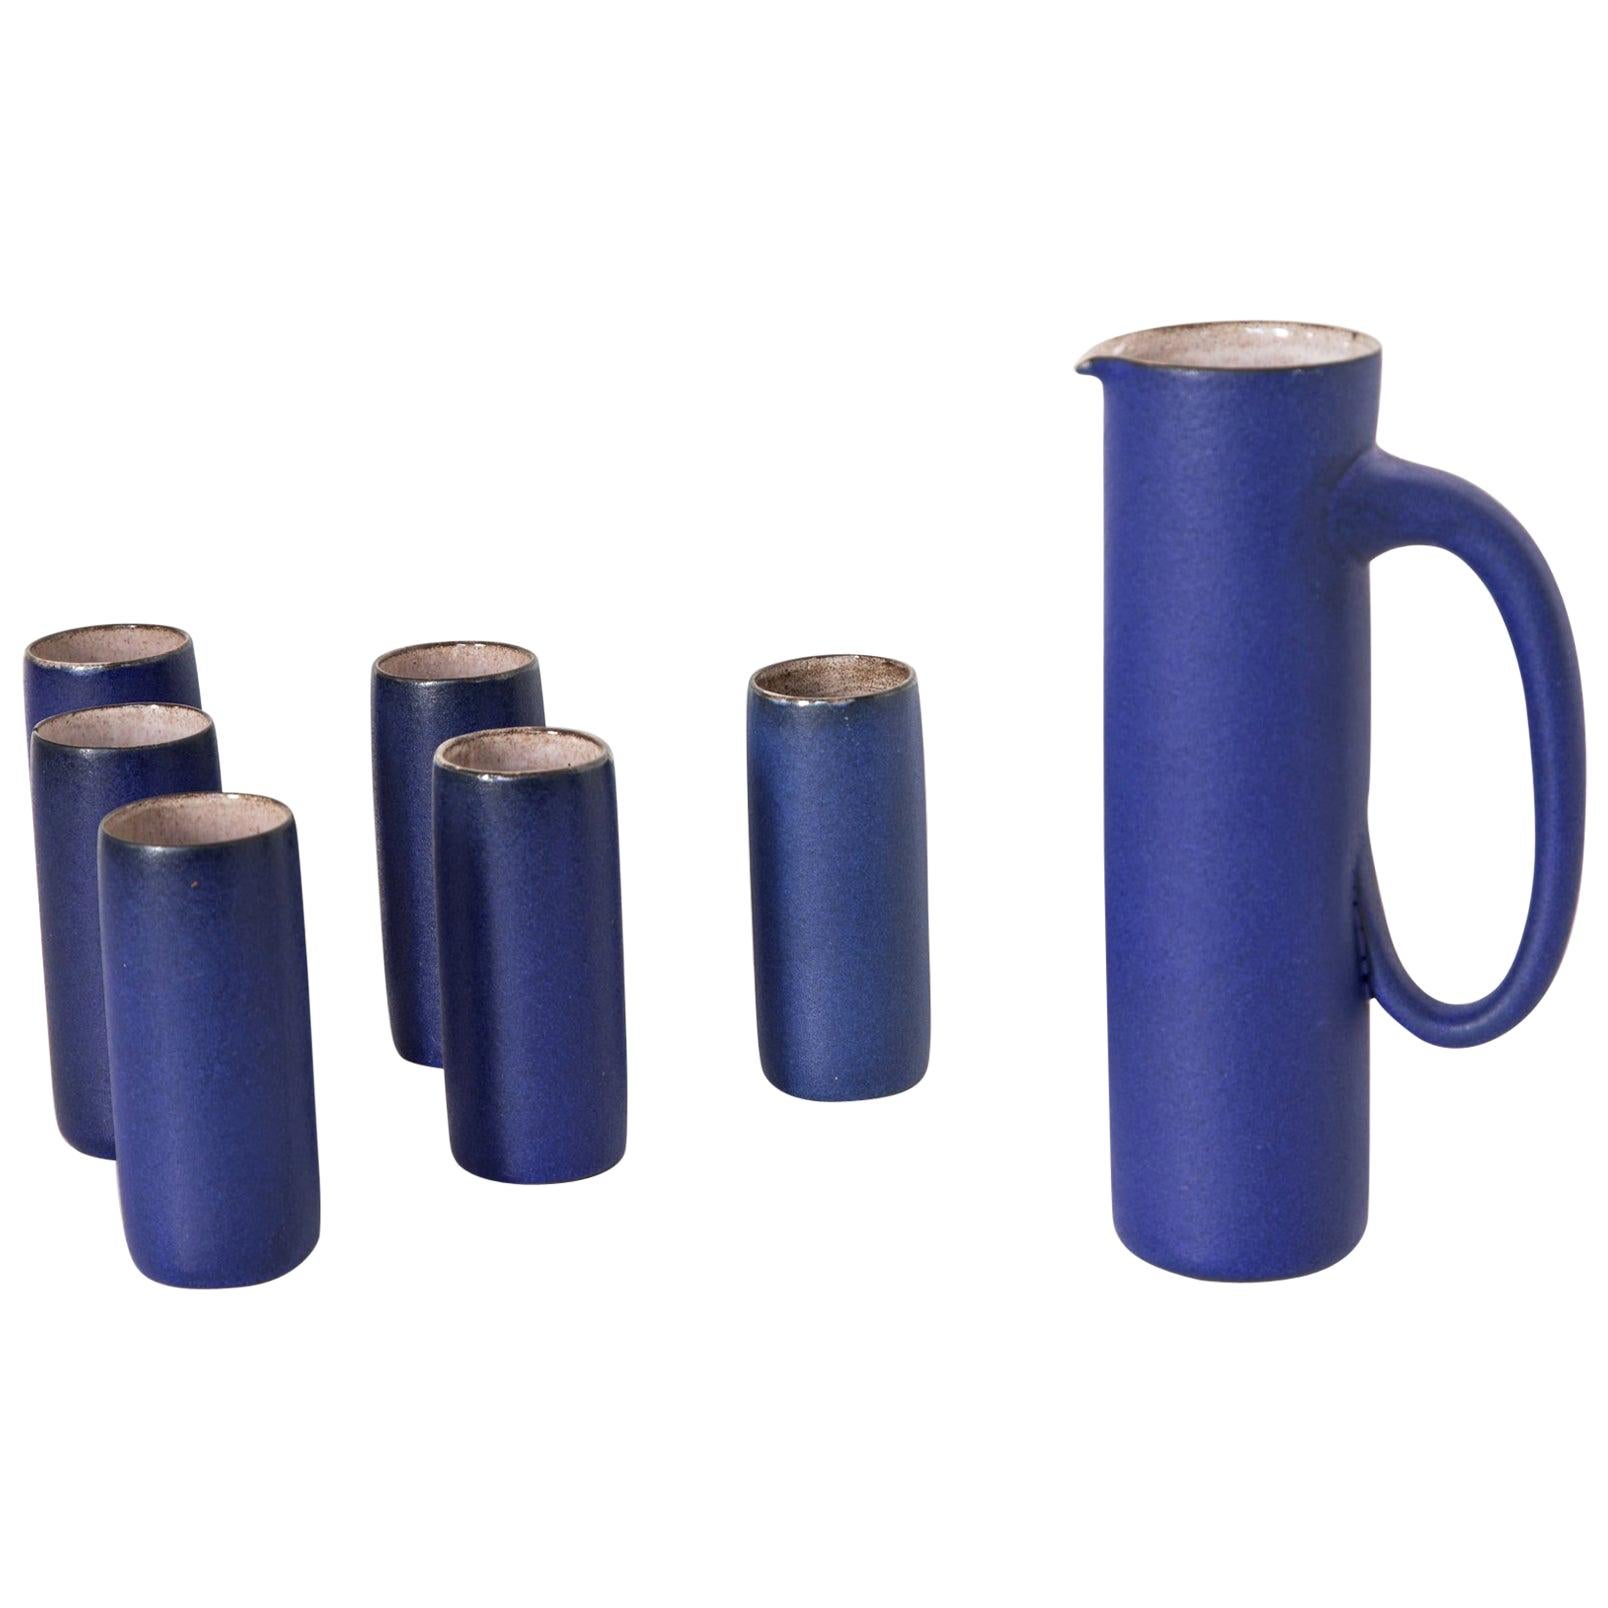 Ceramic Jug and Six Mugs with Blue Glaze by Kasper Würtz